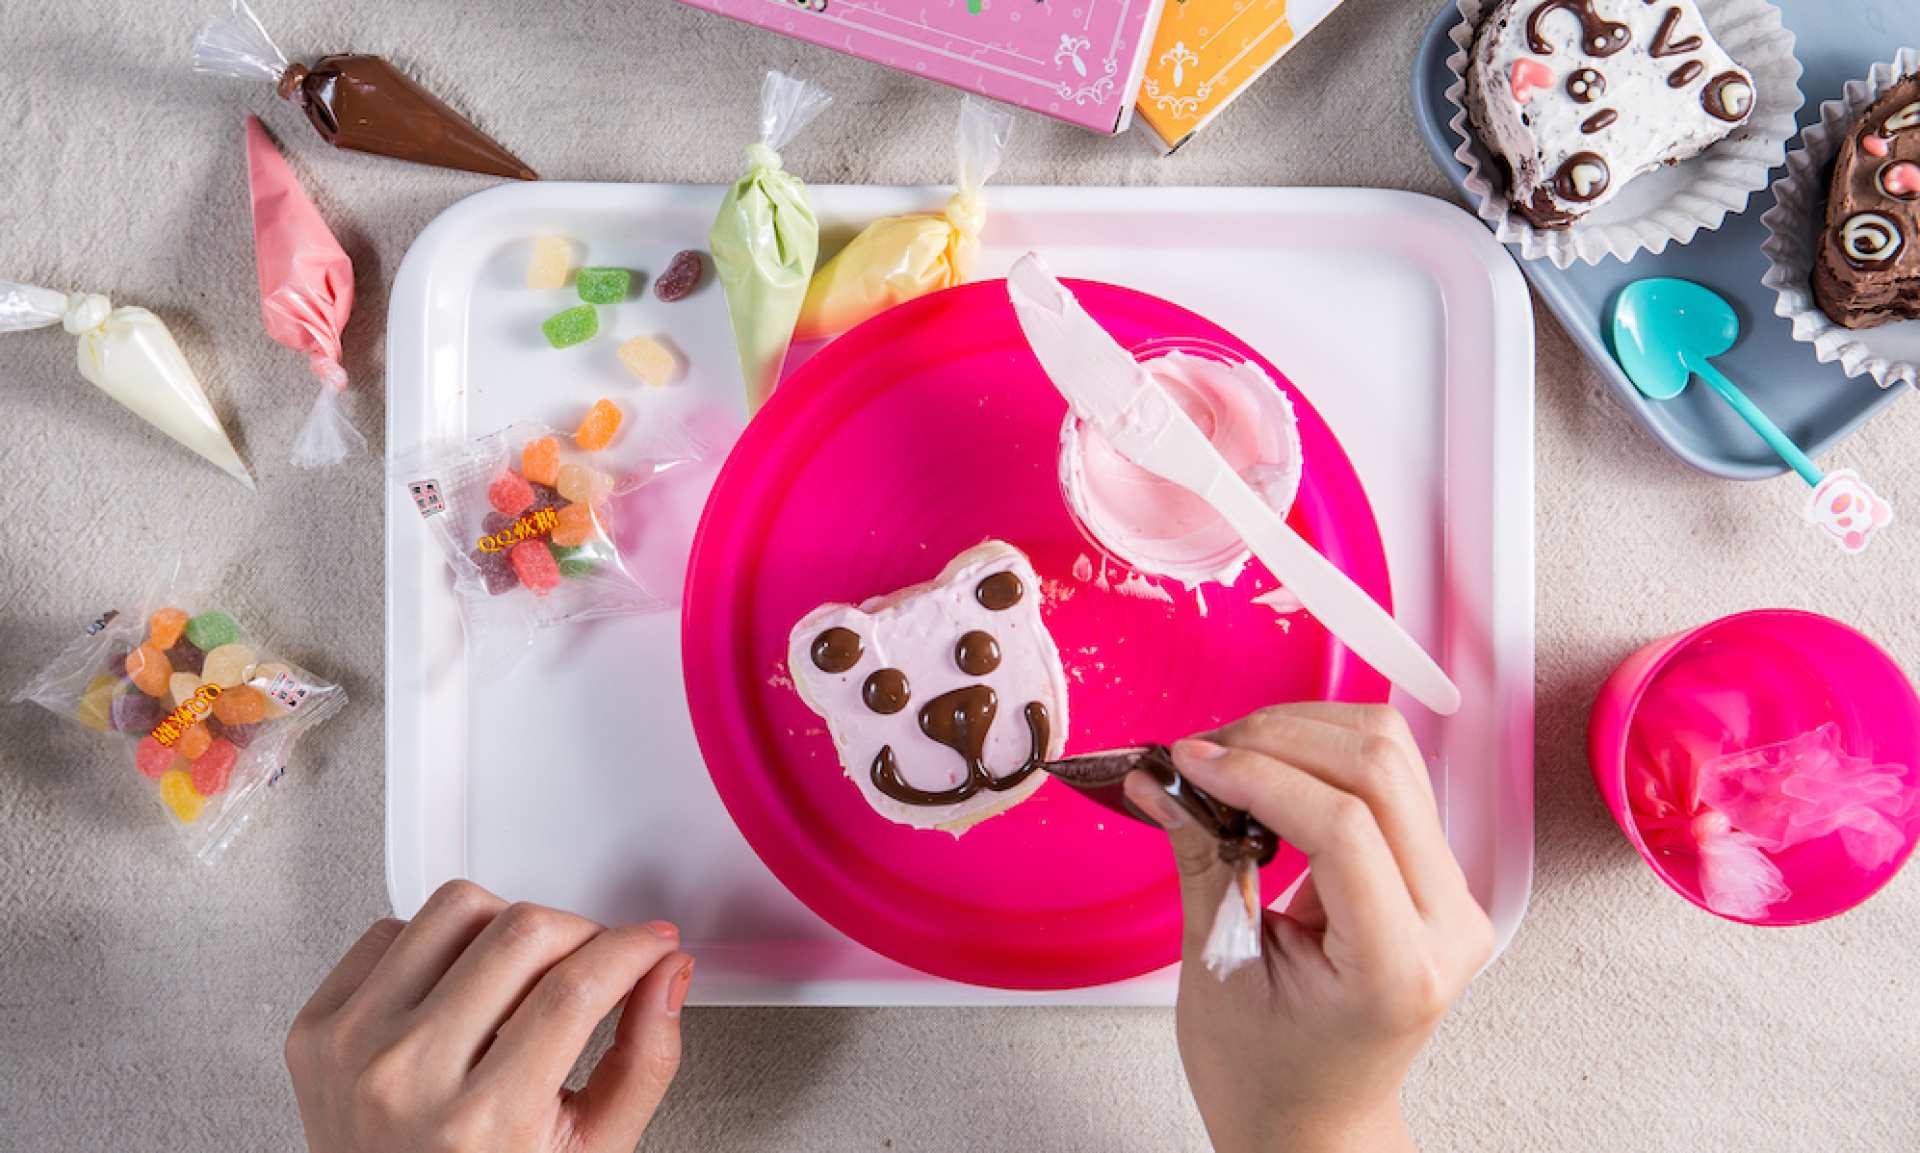  【台中DIY彩繪甜點】小惡魔雪莉貝爾創意冰品甜點・DIY彩繪體驗 